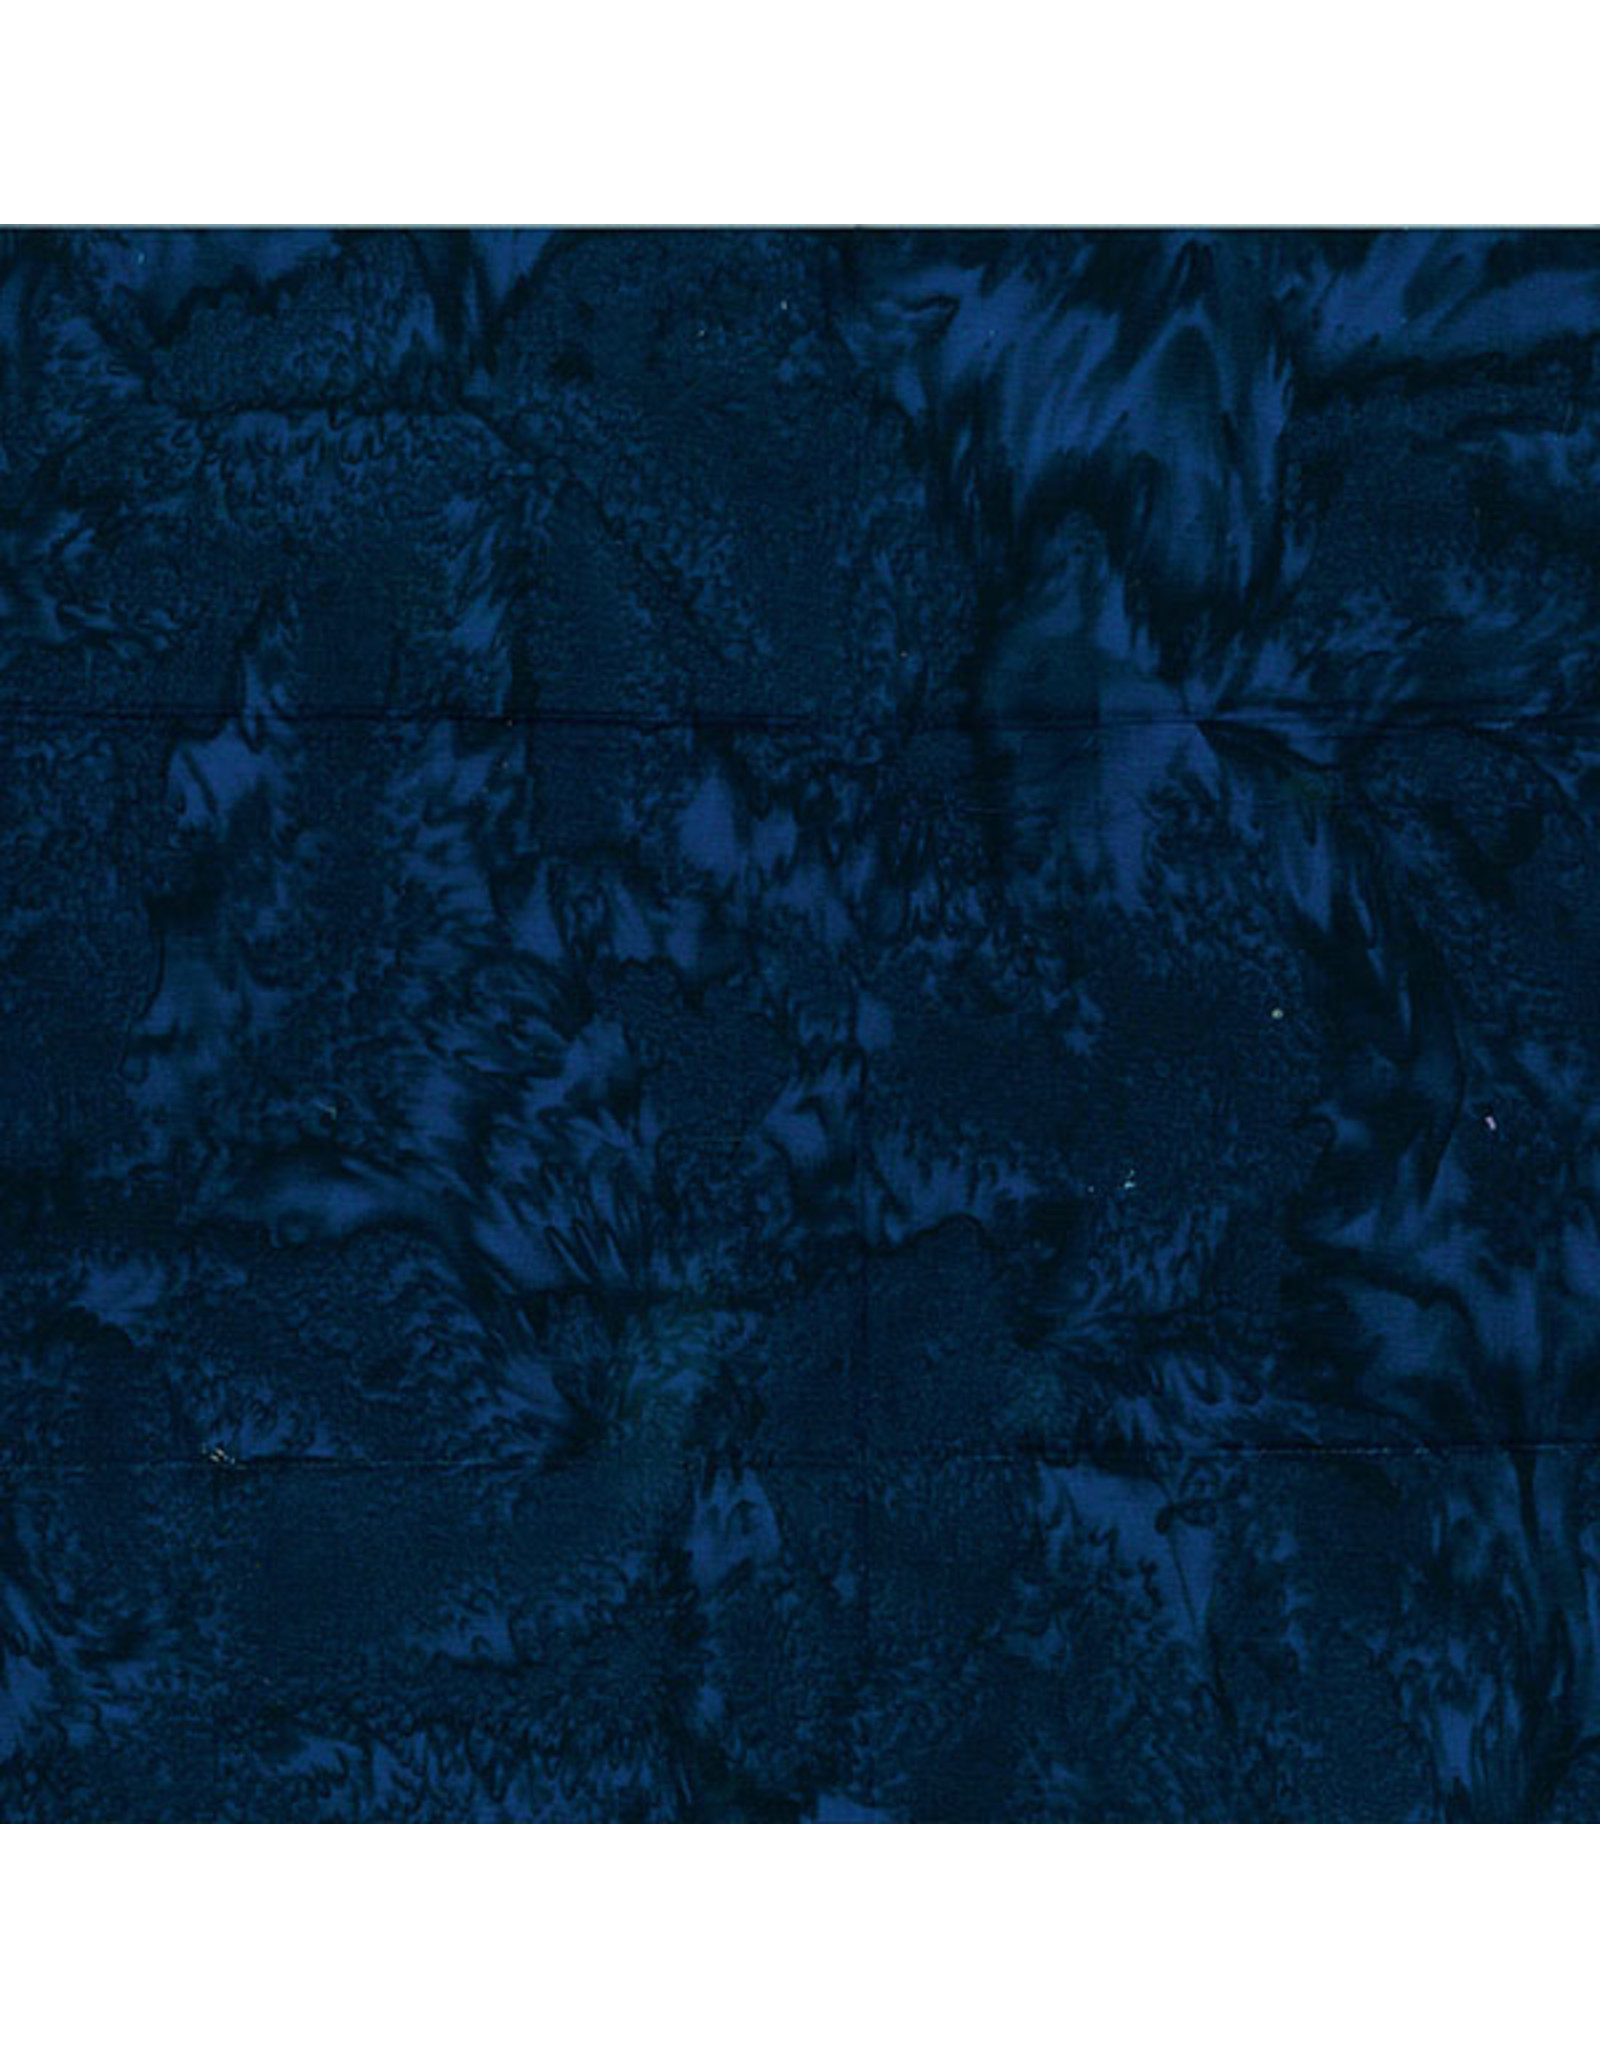 Hoffman Fabrics Stof 100% katoen Bali Hand-dyed donkerblauw